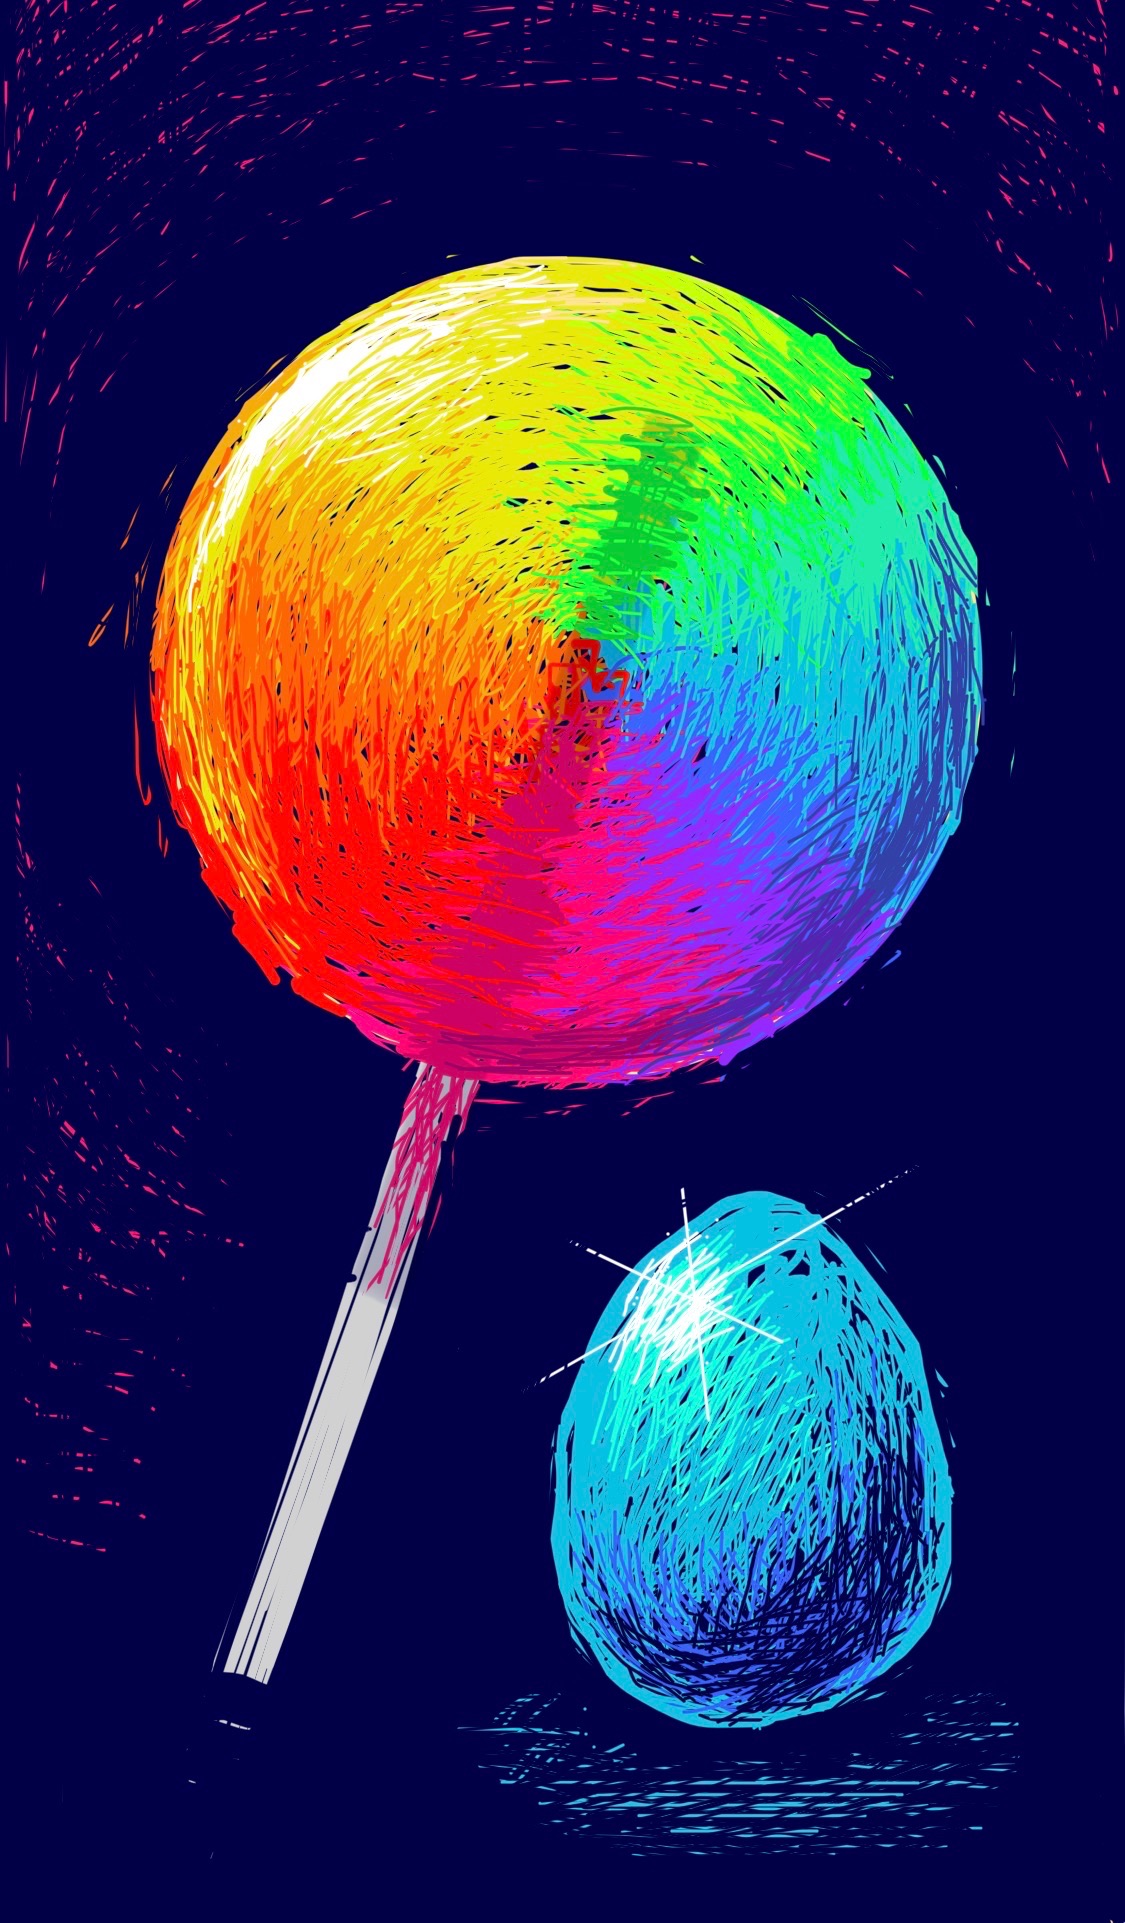 A rainbow lollipop and an egg